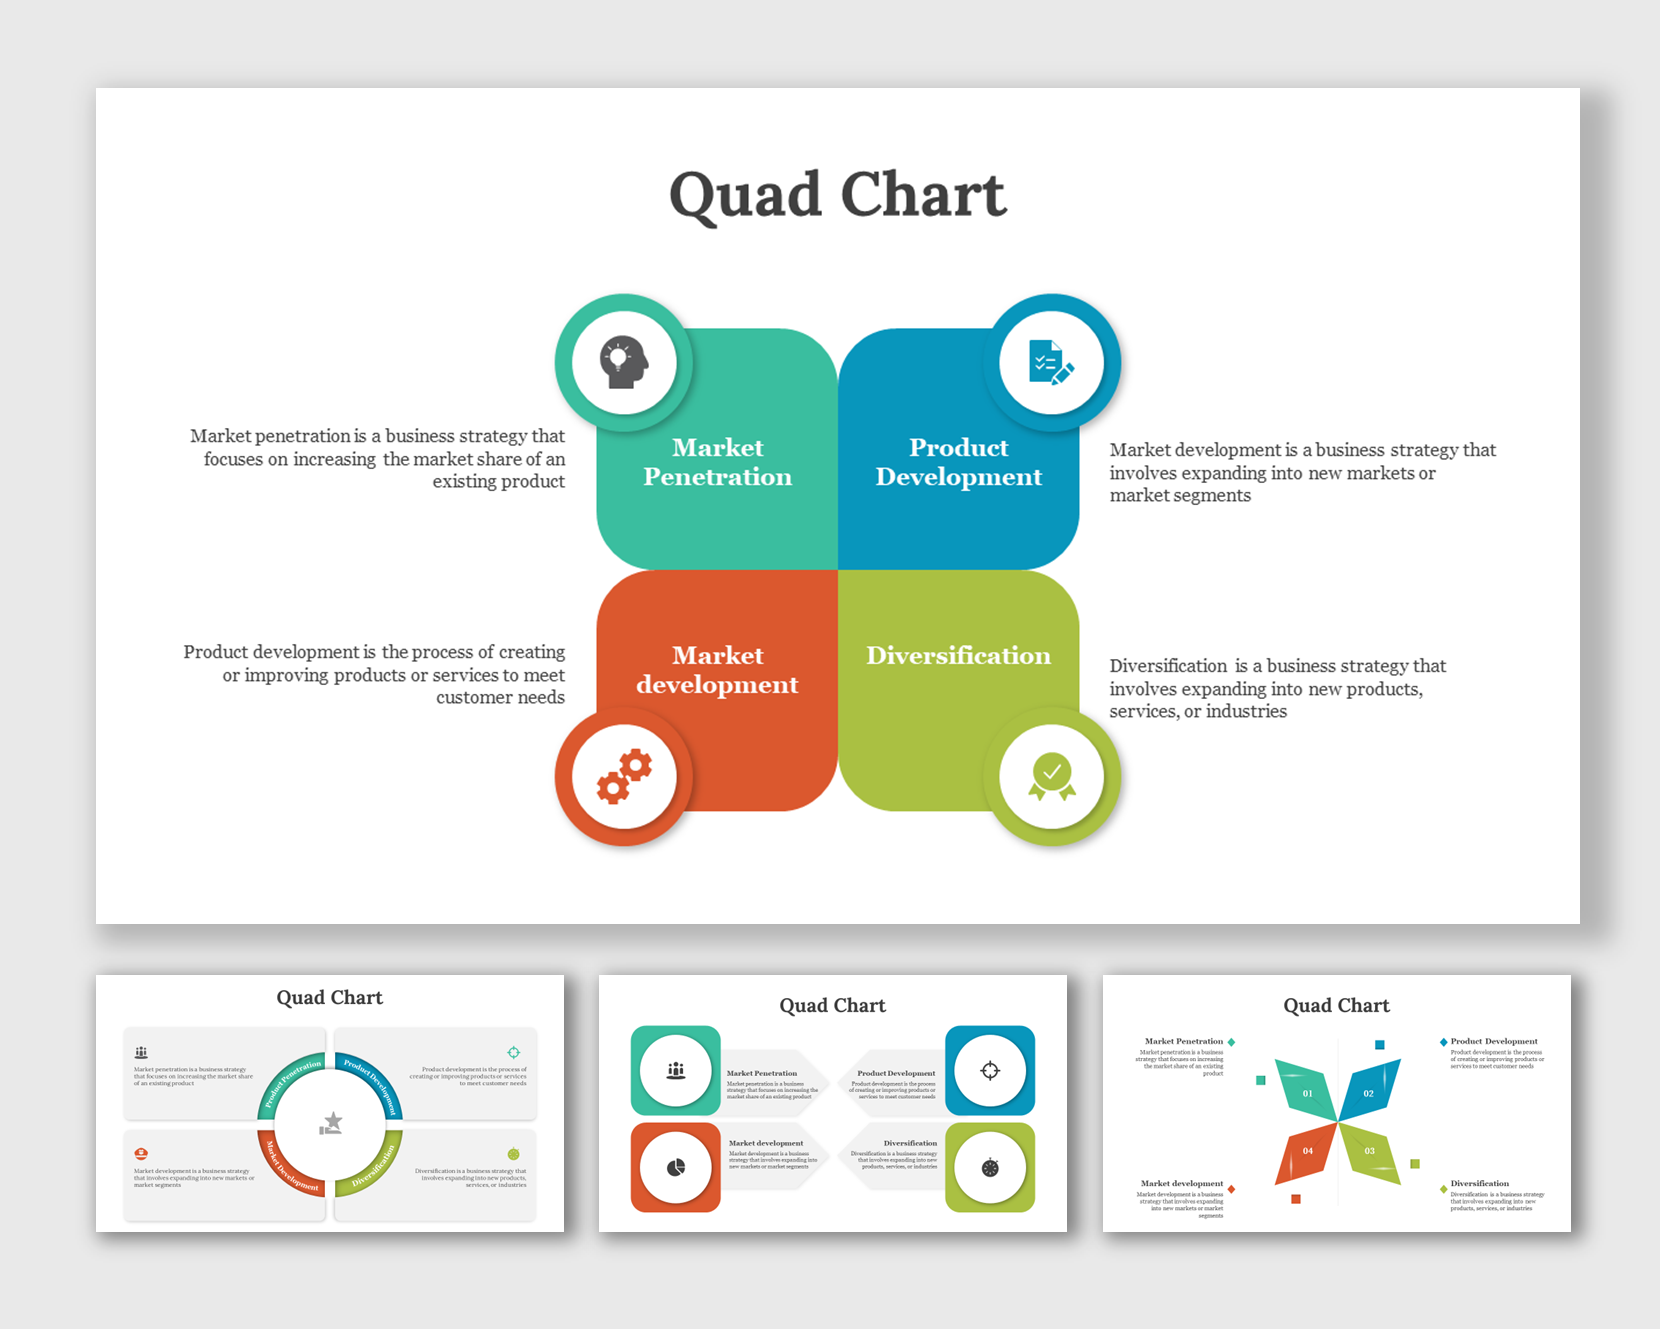 quad chart template